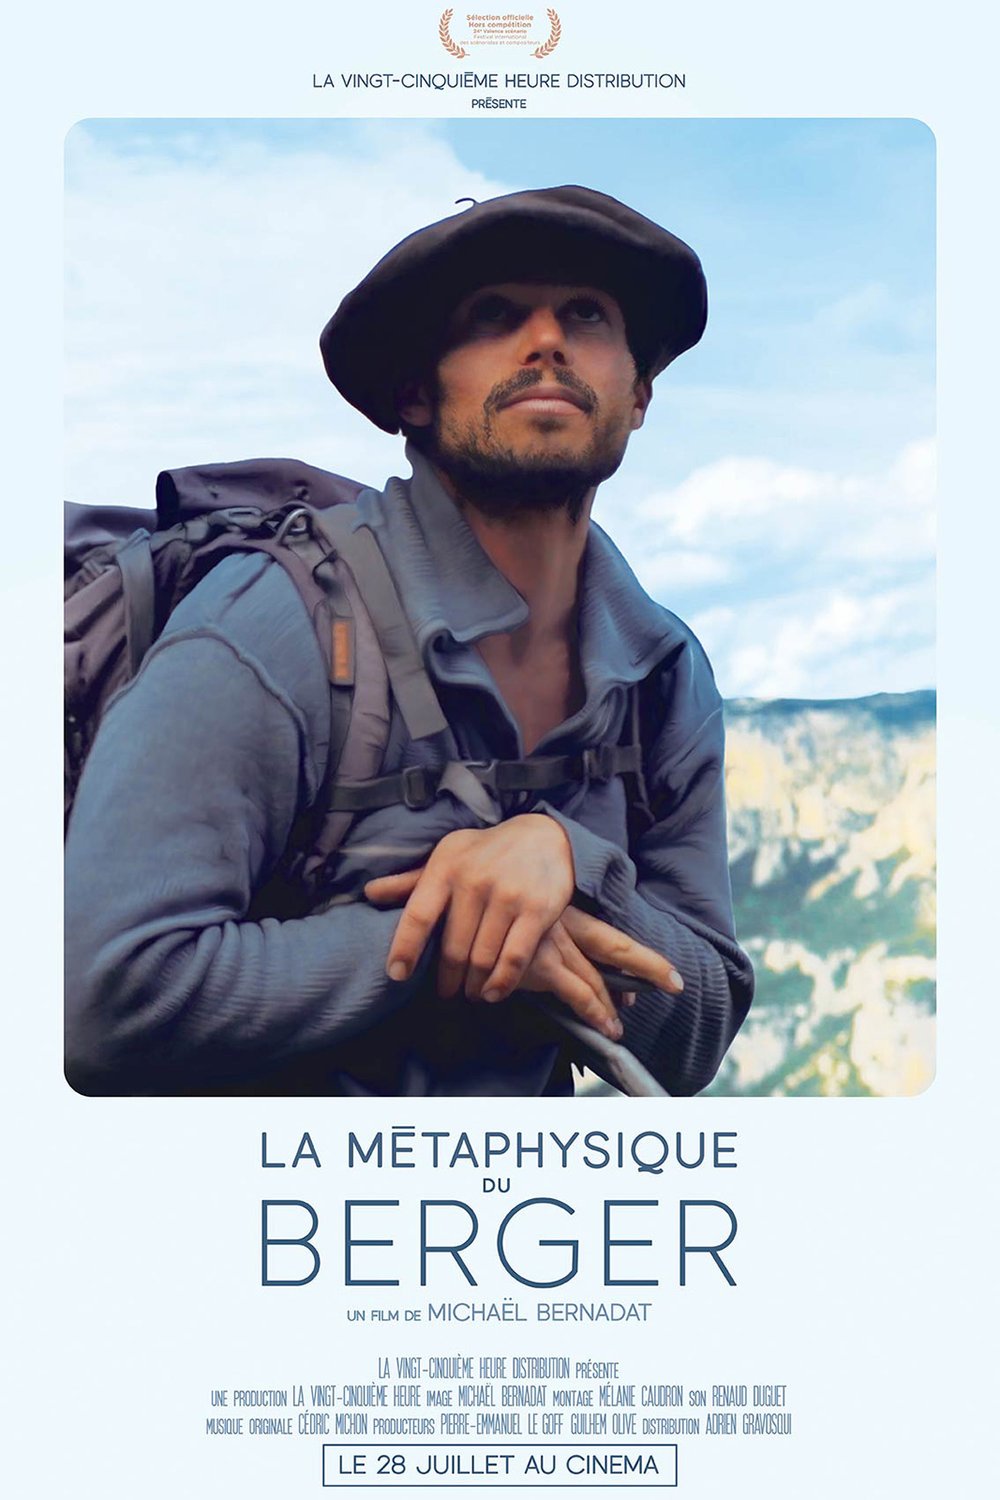 Poster of the movie La métaphysique du berger